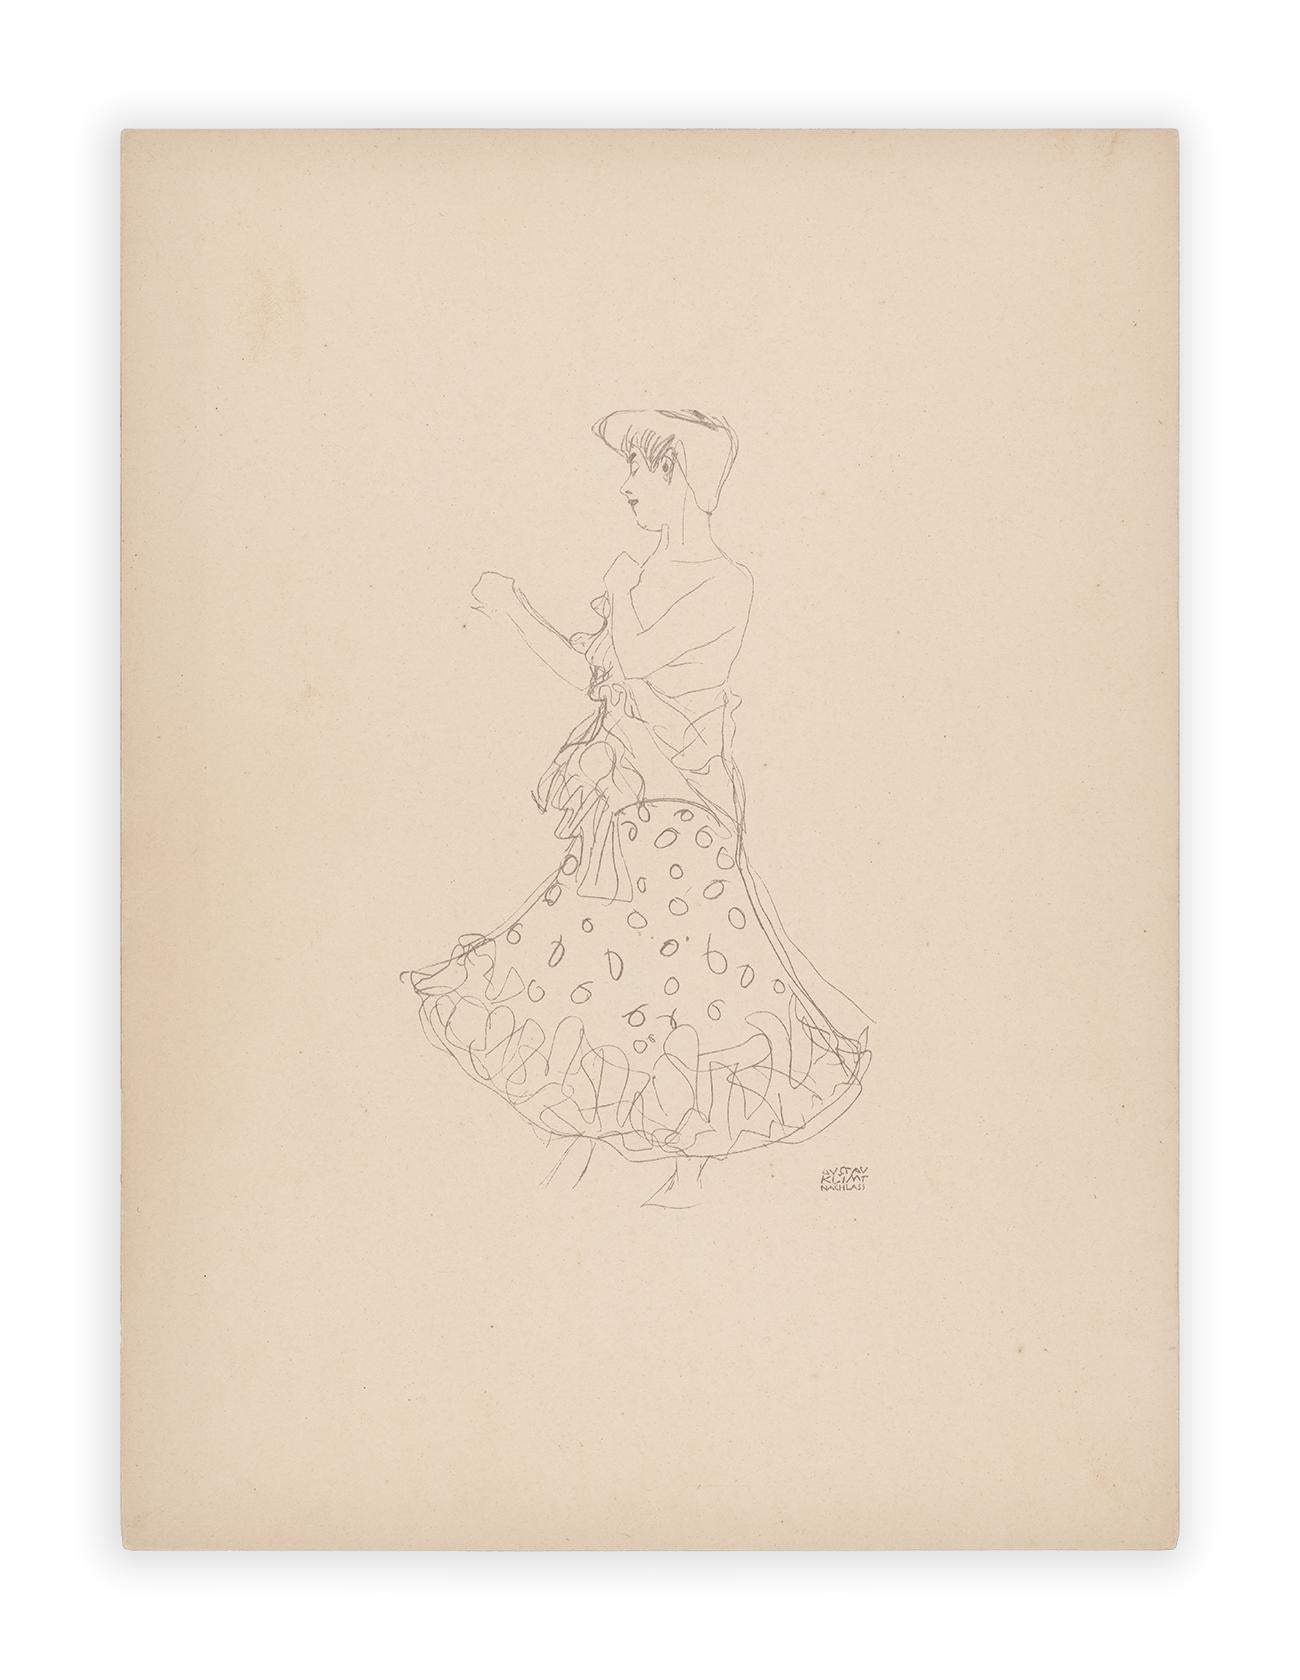 Woman andressing, Gustav Klimt Handzeichnungen (Sketch), Thyrsos Verlag, 1922 (Wiener Secession), Print, von (after) Gustav Klimt